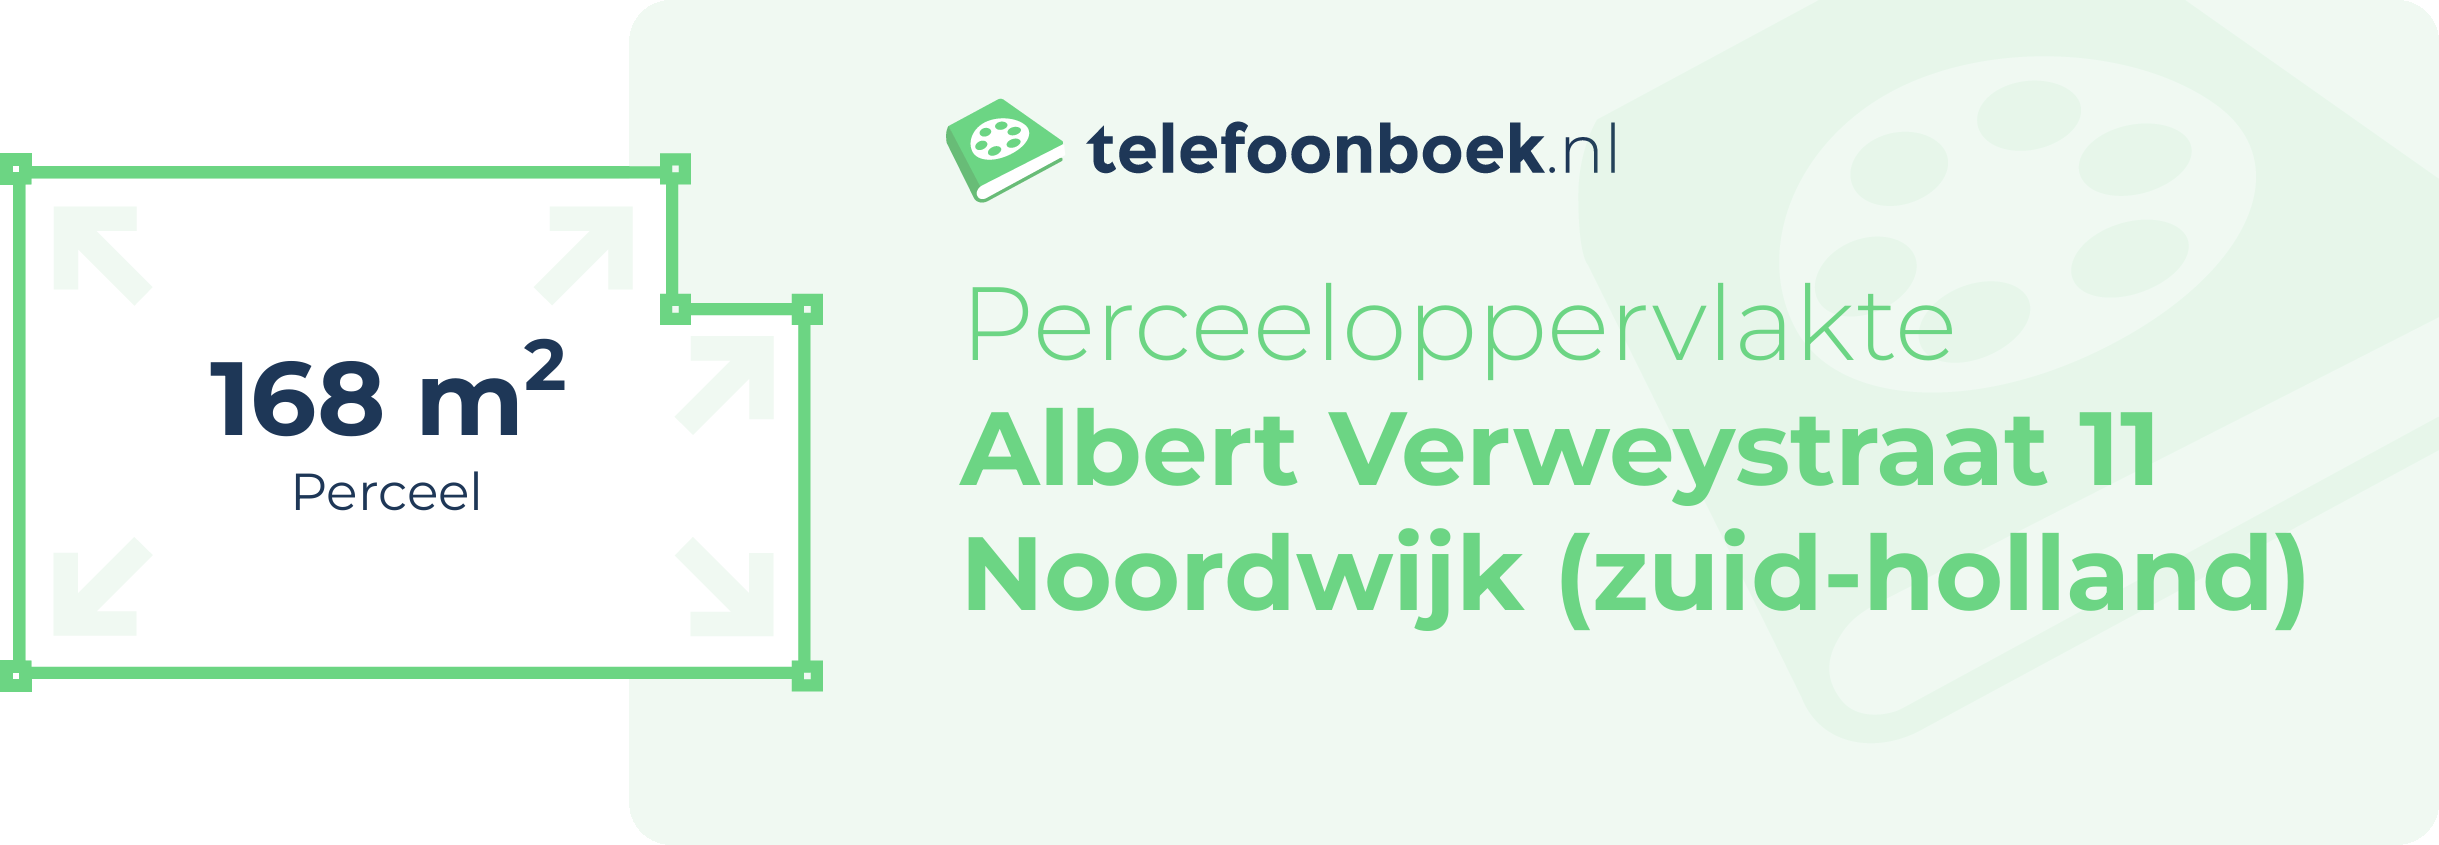 Perceeloppervlakte Albert Verweystraat 11 Noordwijk (Zuid-Holland)